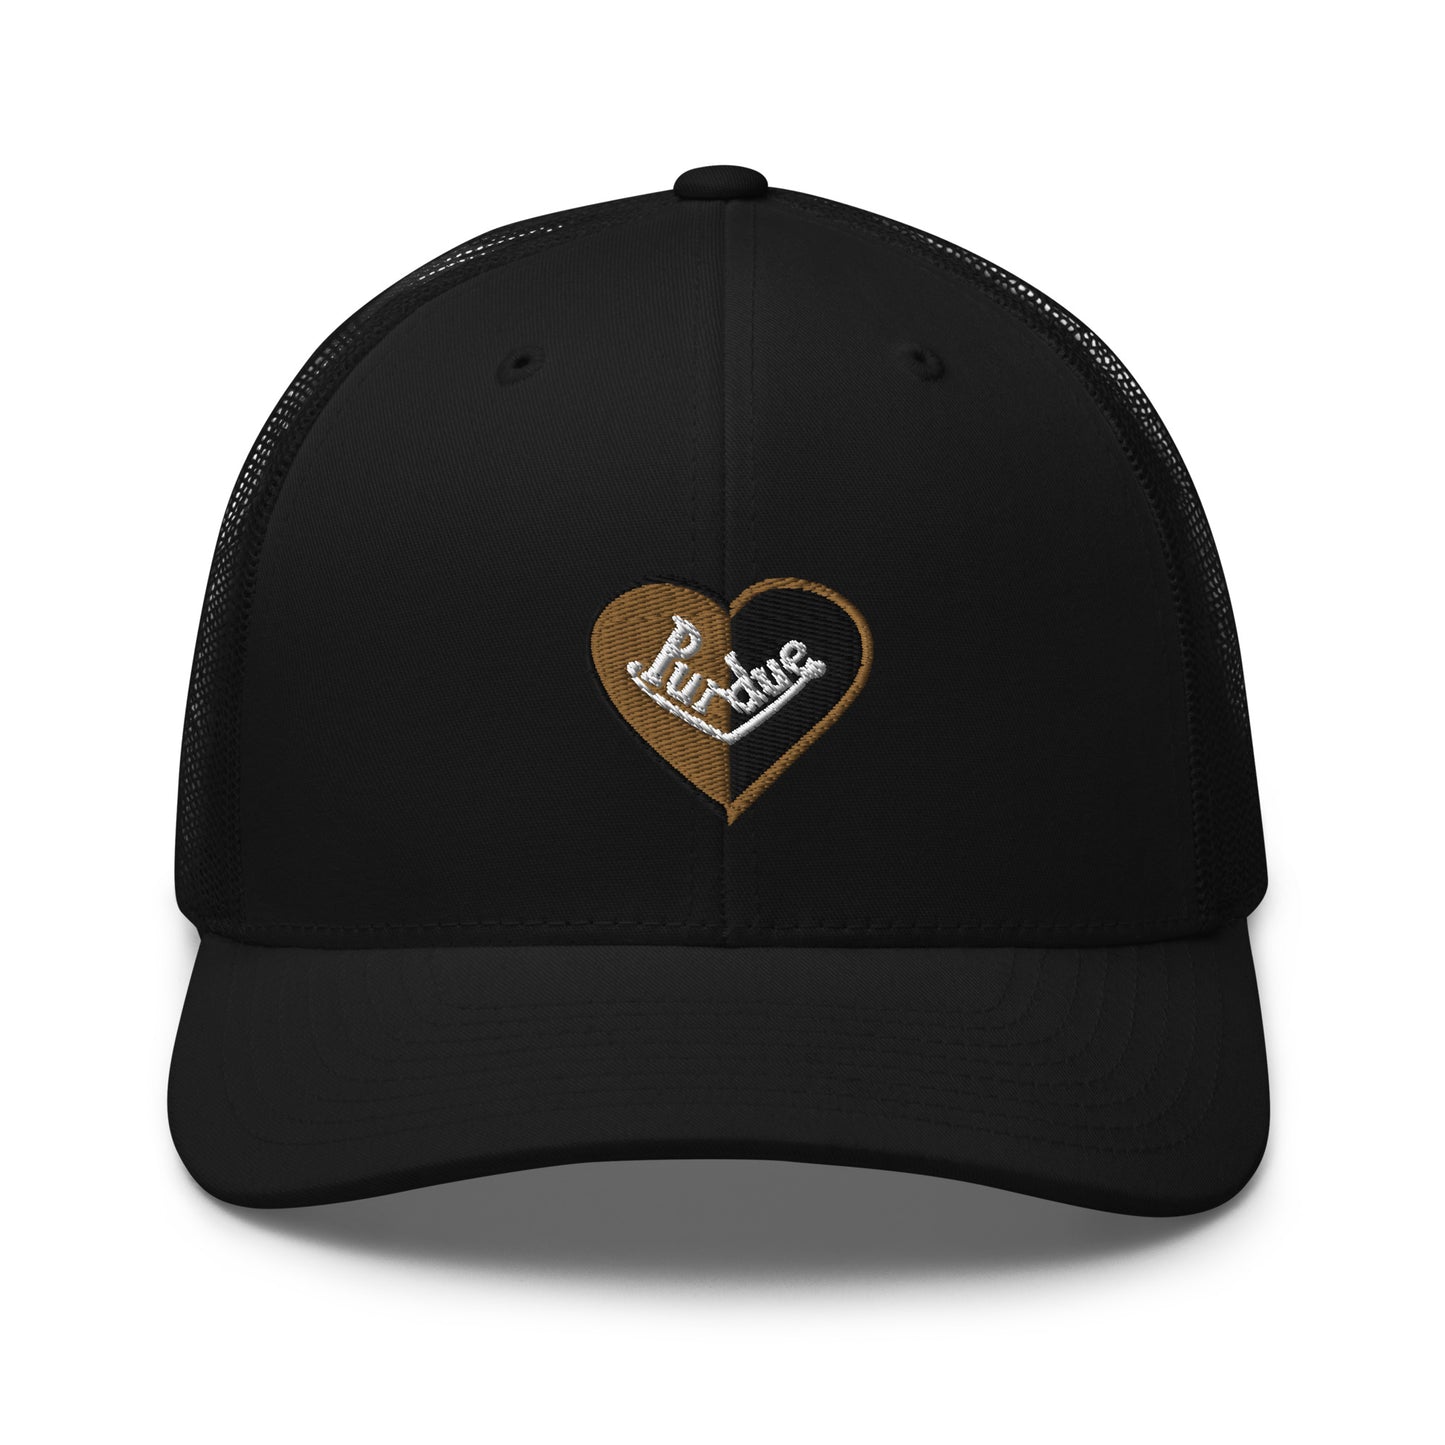 Purdue Split Heart Trucker Hat